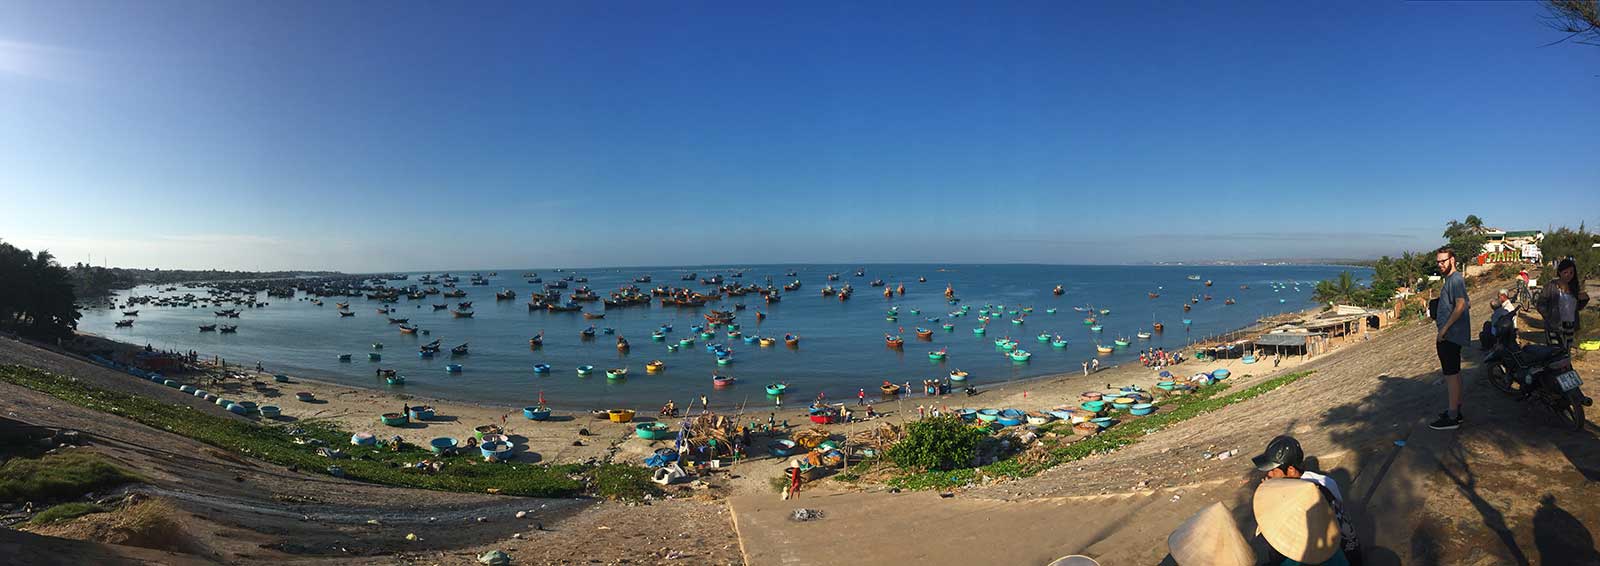 Reisetipps Vietnam Mui Ne, Sehenswürdigkeiten in Mui Ne, Kitsurferparadies, Fisherman's Village